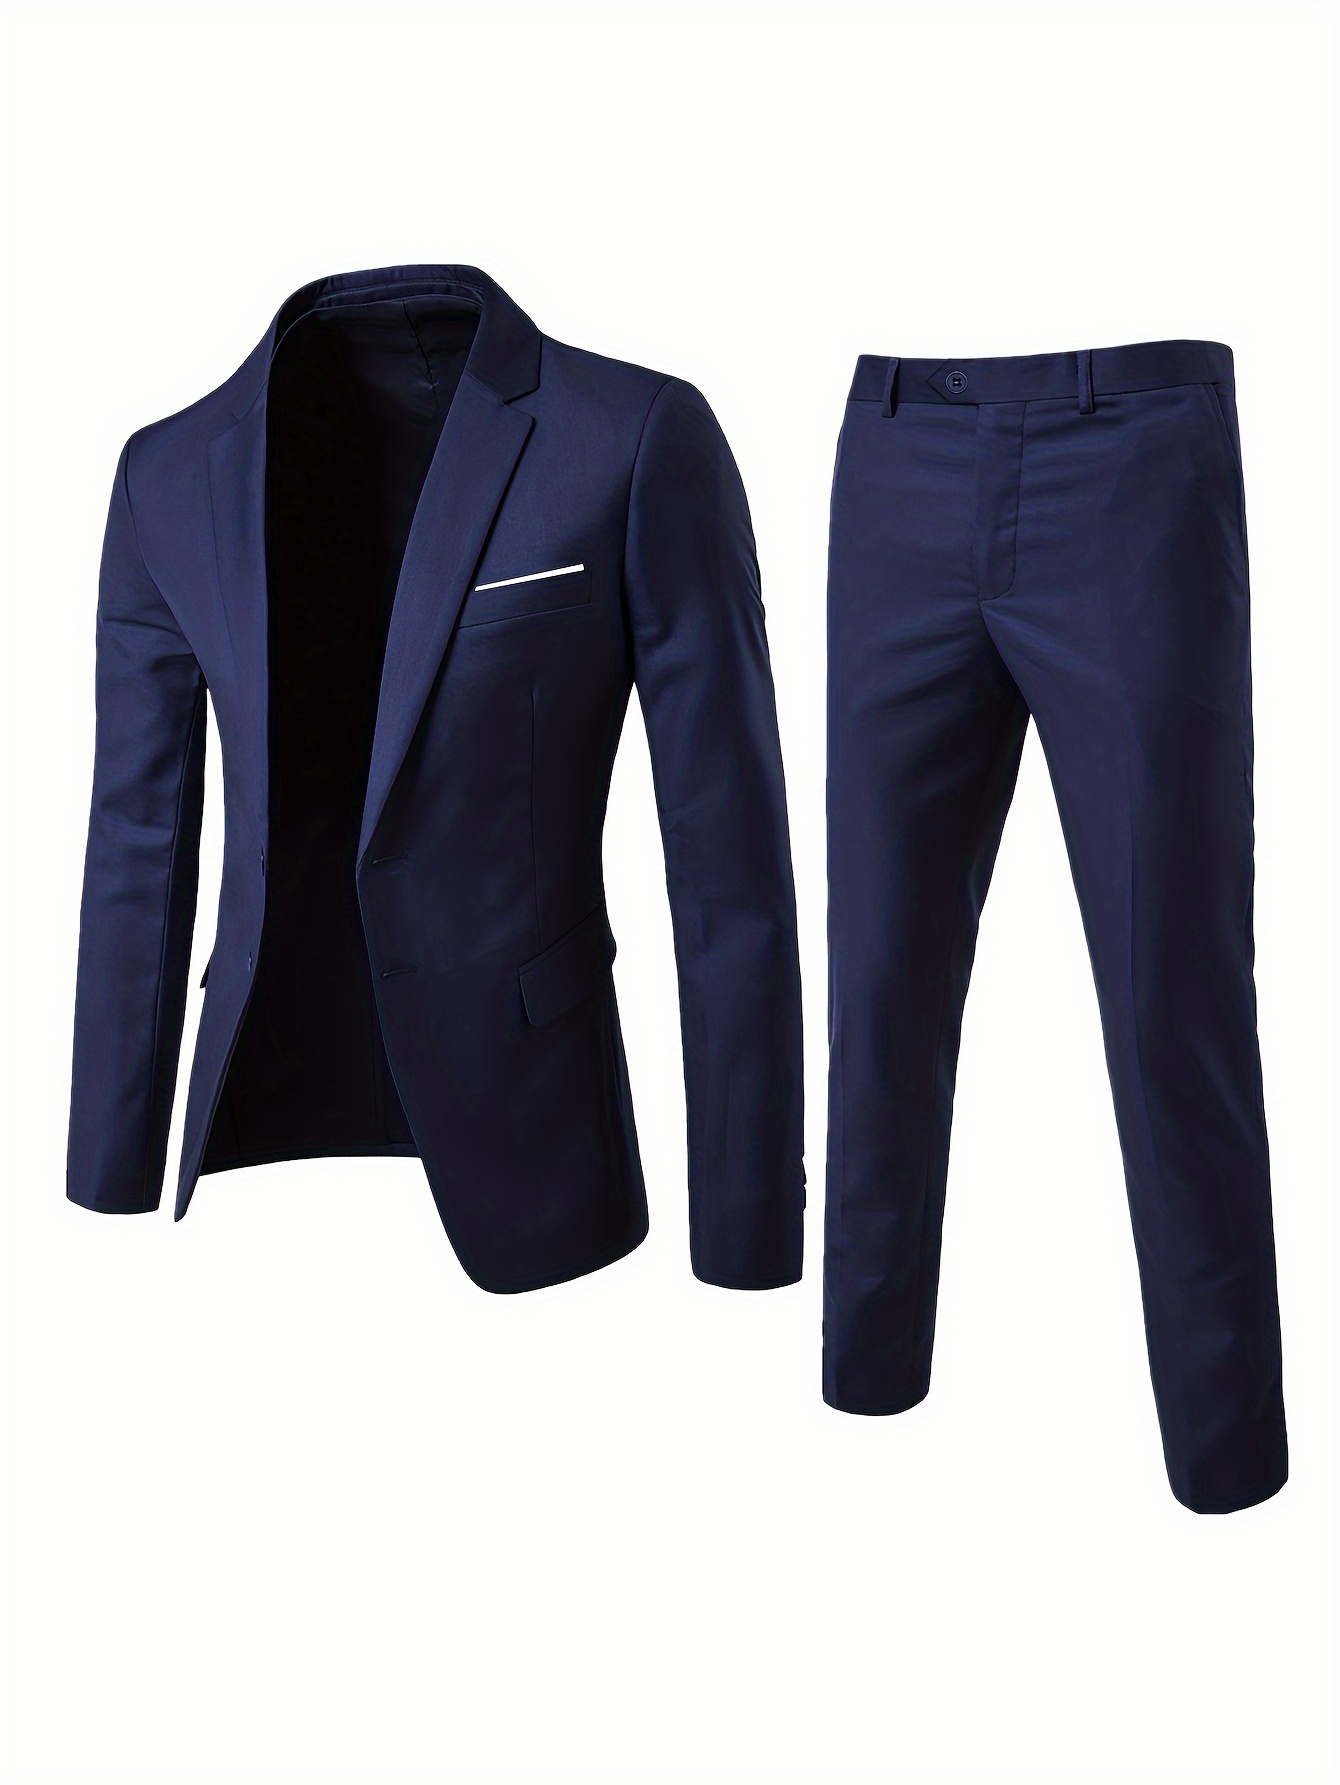 Férfi 2 részes öltönykészlet, üzleti öltöny, tömör kétgombos hajtóka Classic Blazer Plus öltöny nadrág, alkalmi üzleti stílusú formális öltözék